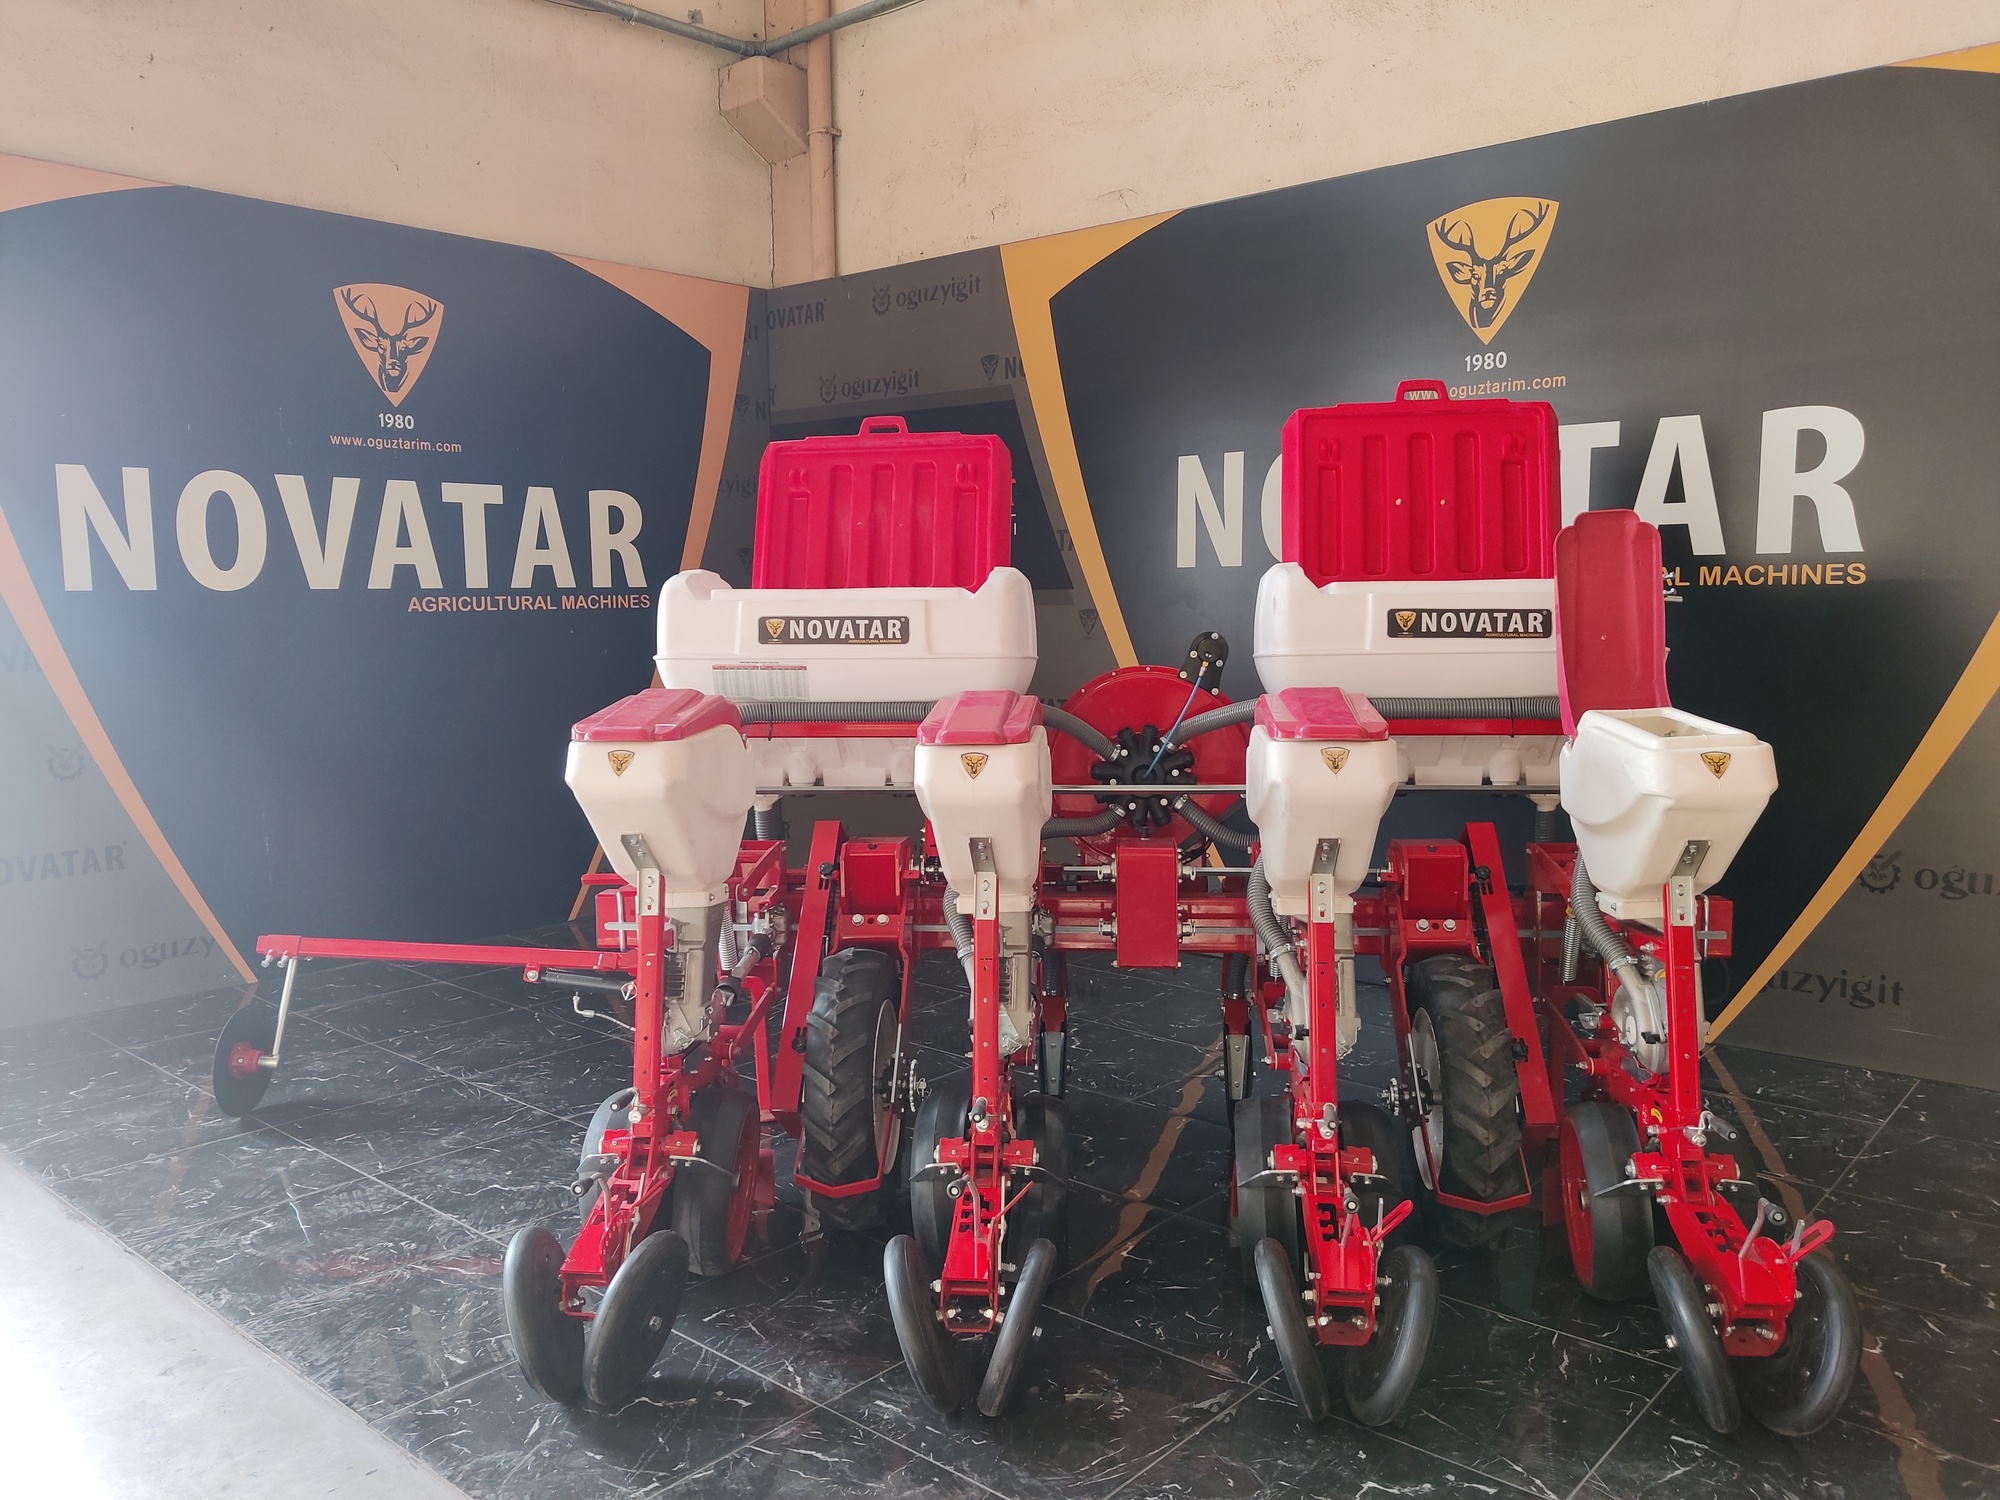 Novatar Agricultural Machinery undefined: das Bild 23